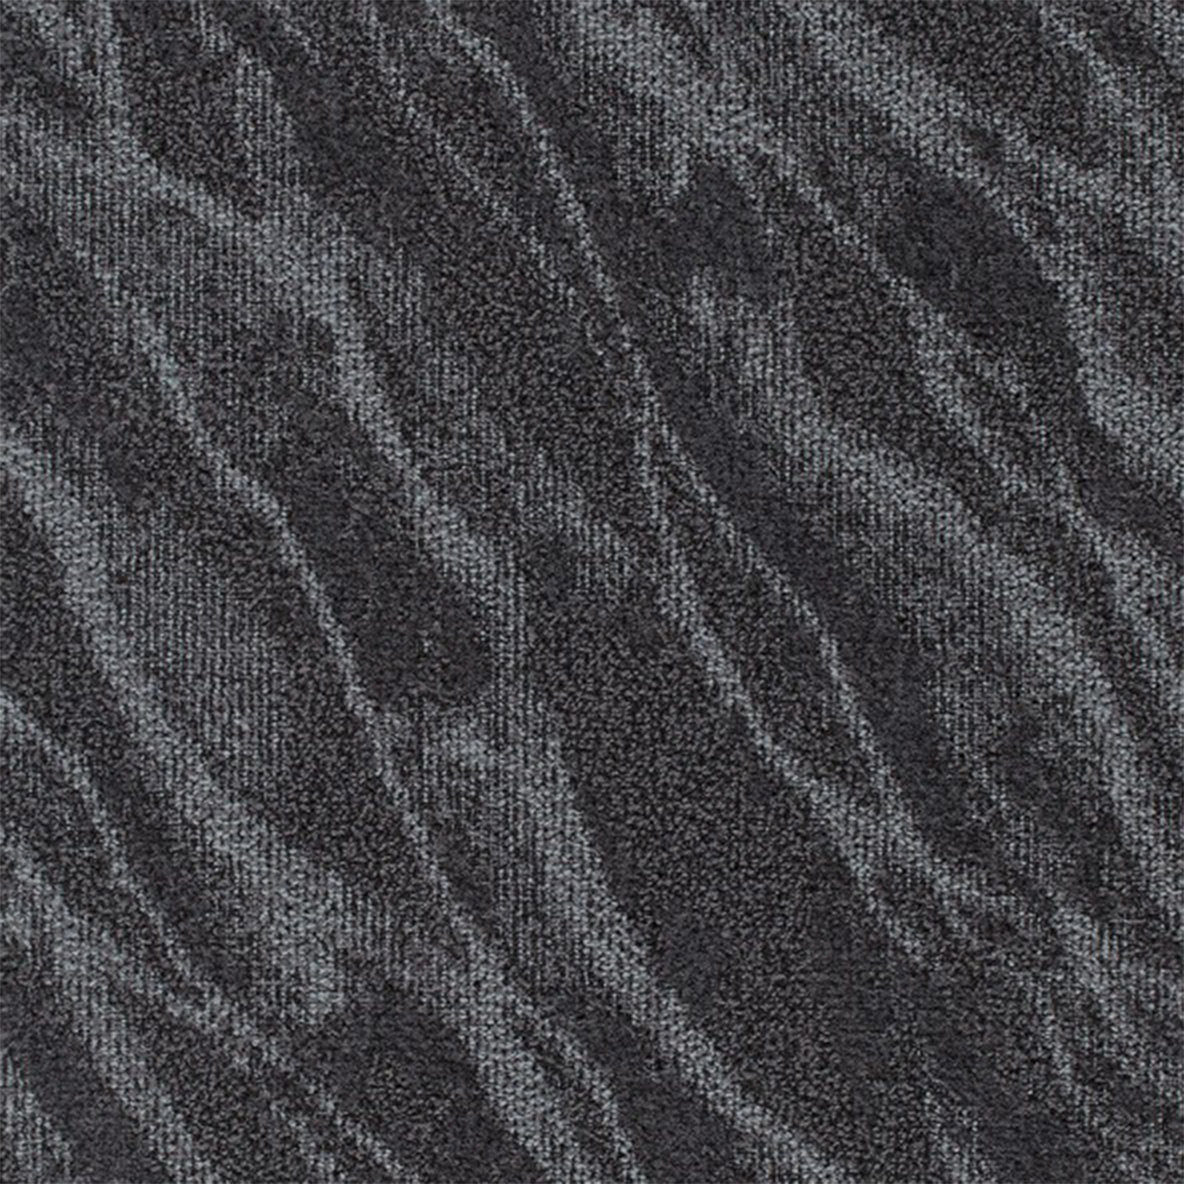 Riverine Commercial Carpet Tile .31 Inch x 50x50 cm per Tile Volcanic color close up